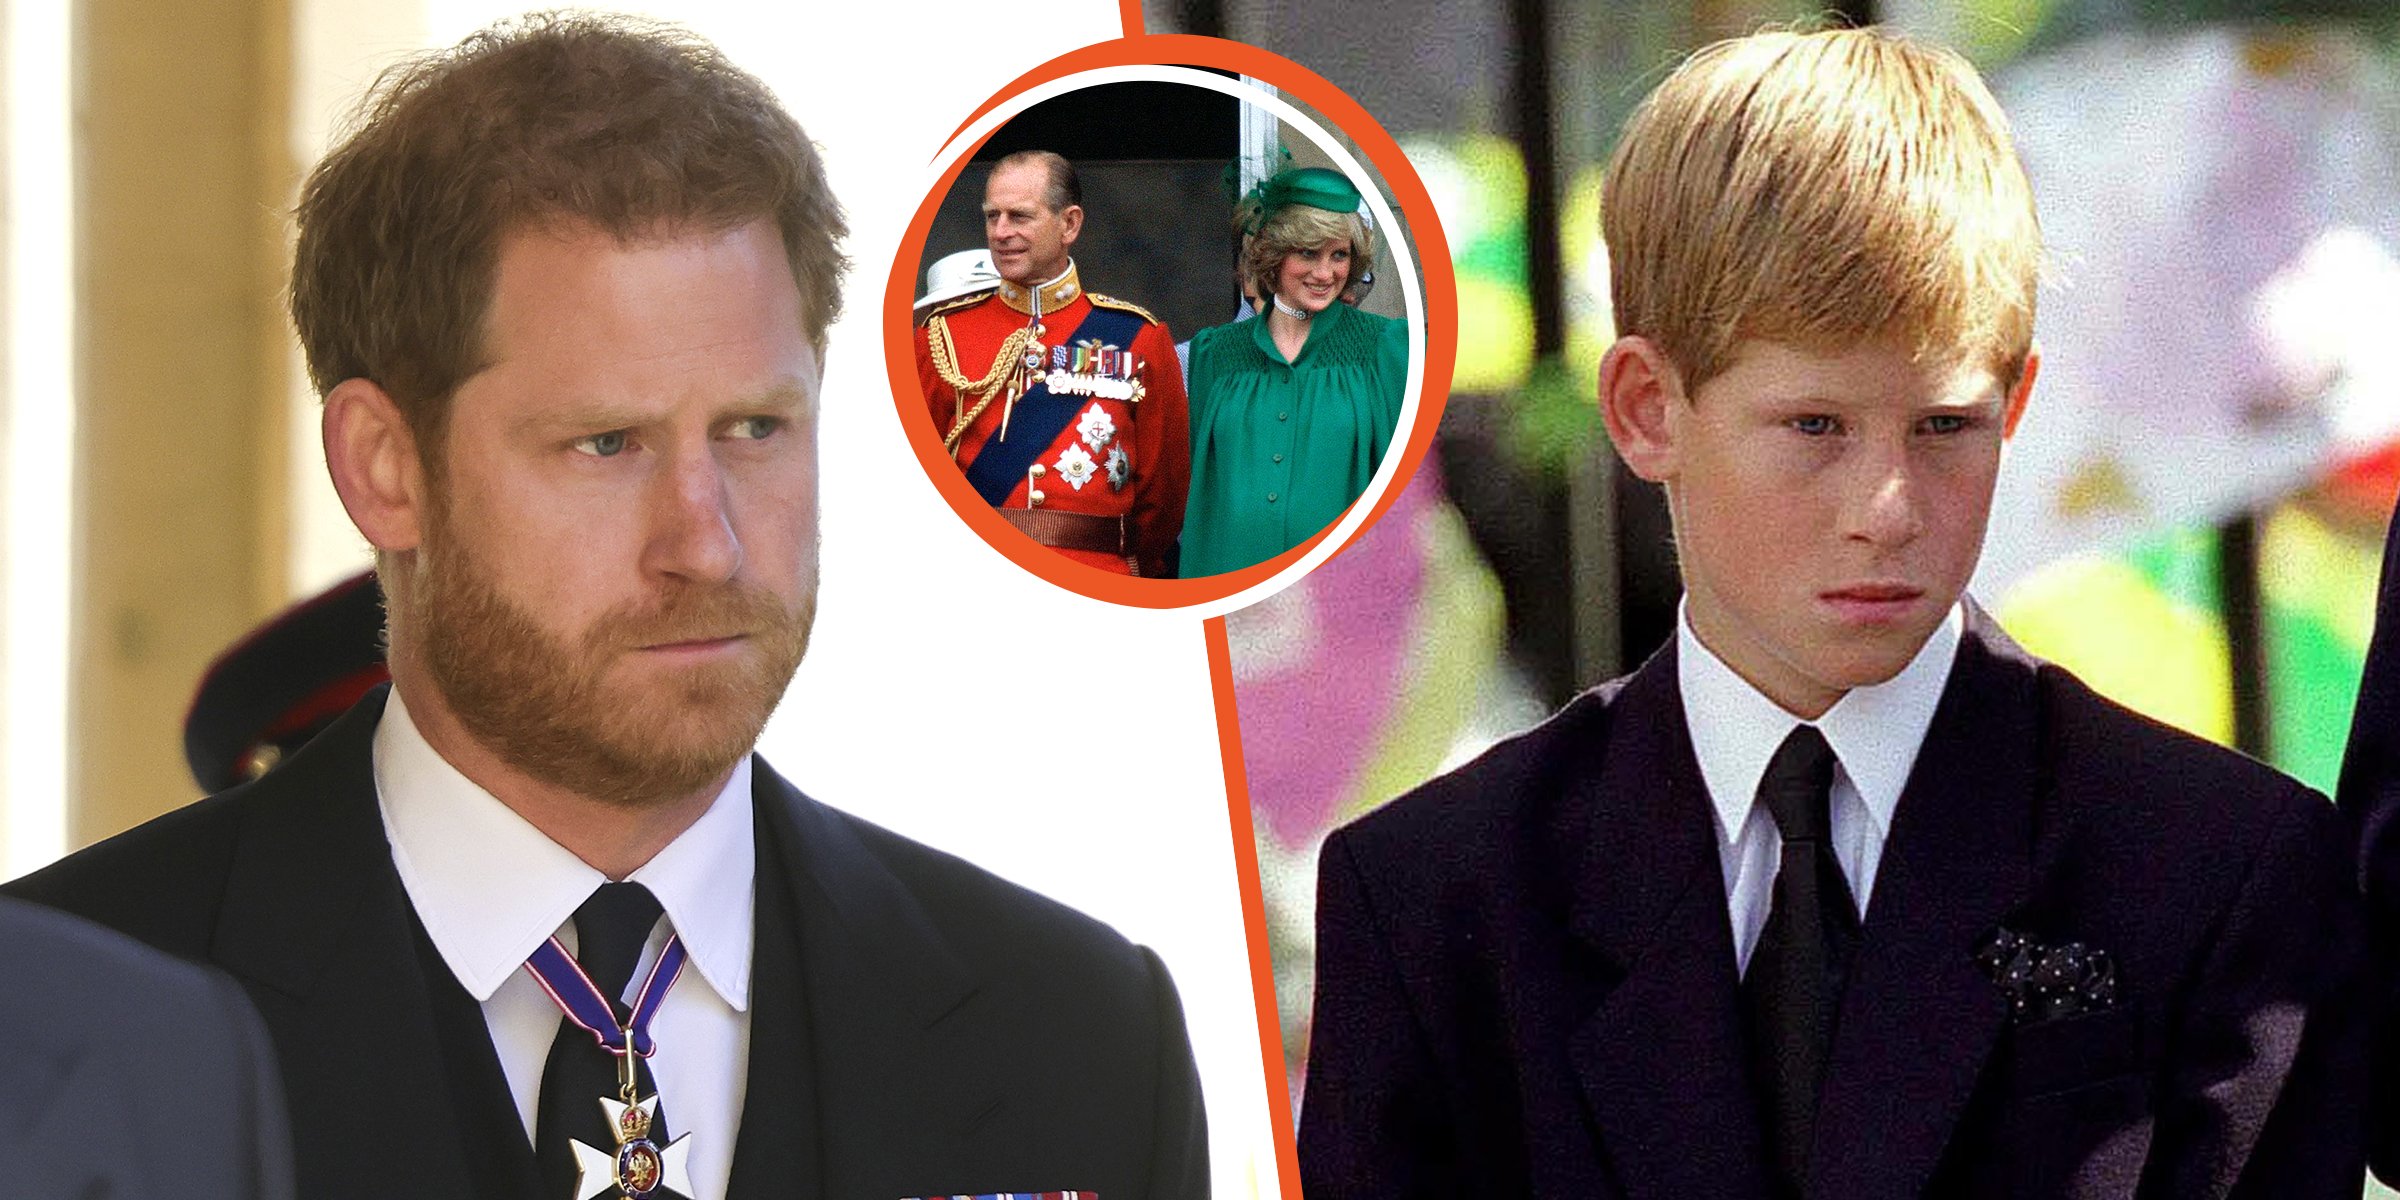 Príncipe Harry | Príncipe Philip y Princesa Diana | Príncipe Harry de niño | Foto: Getty Images